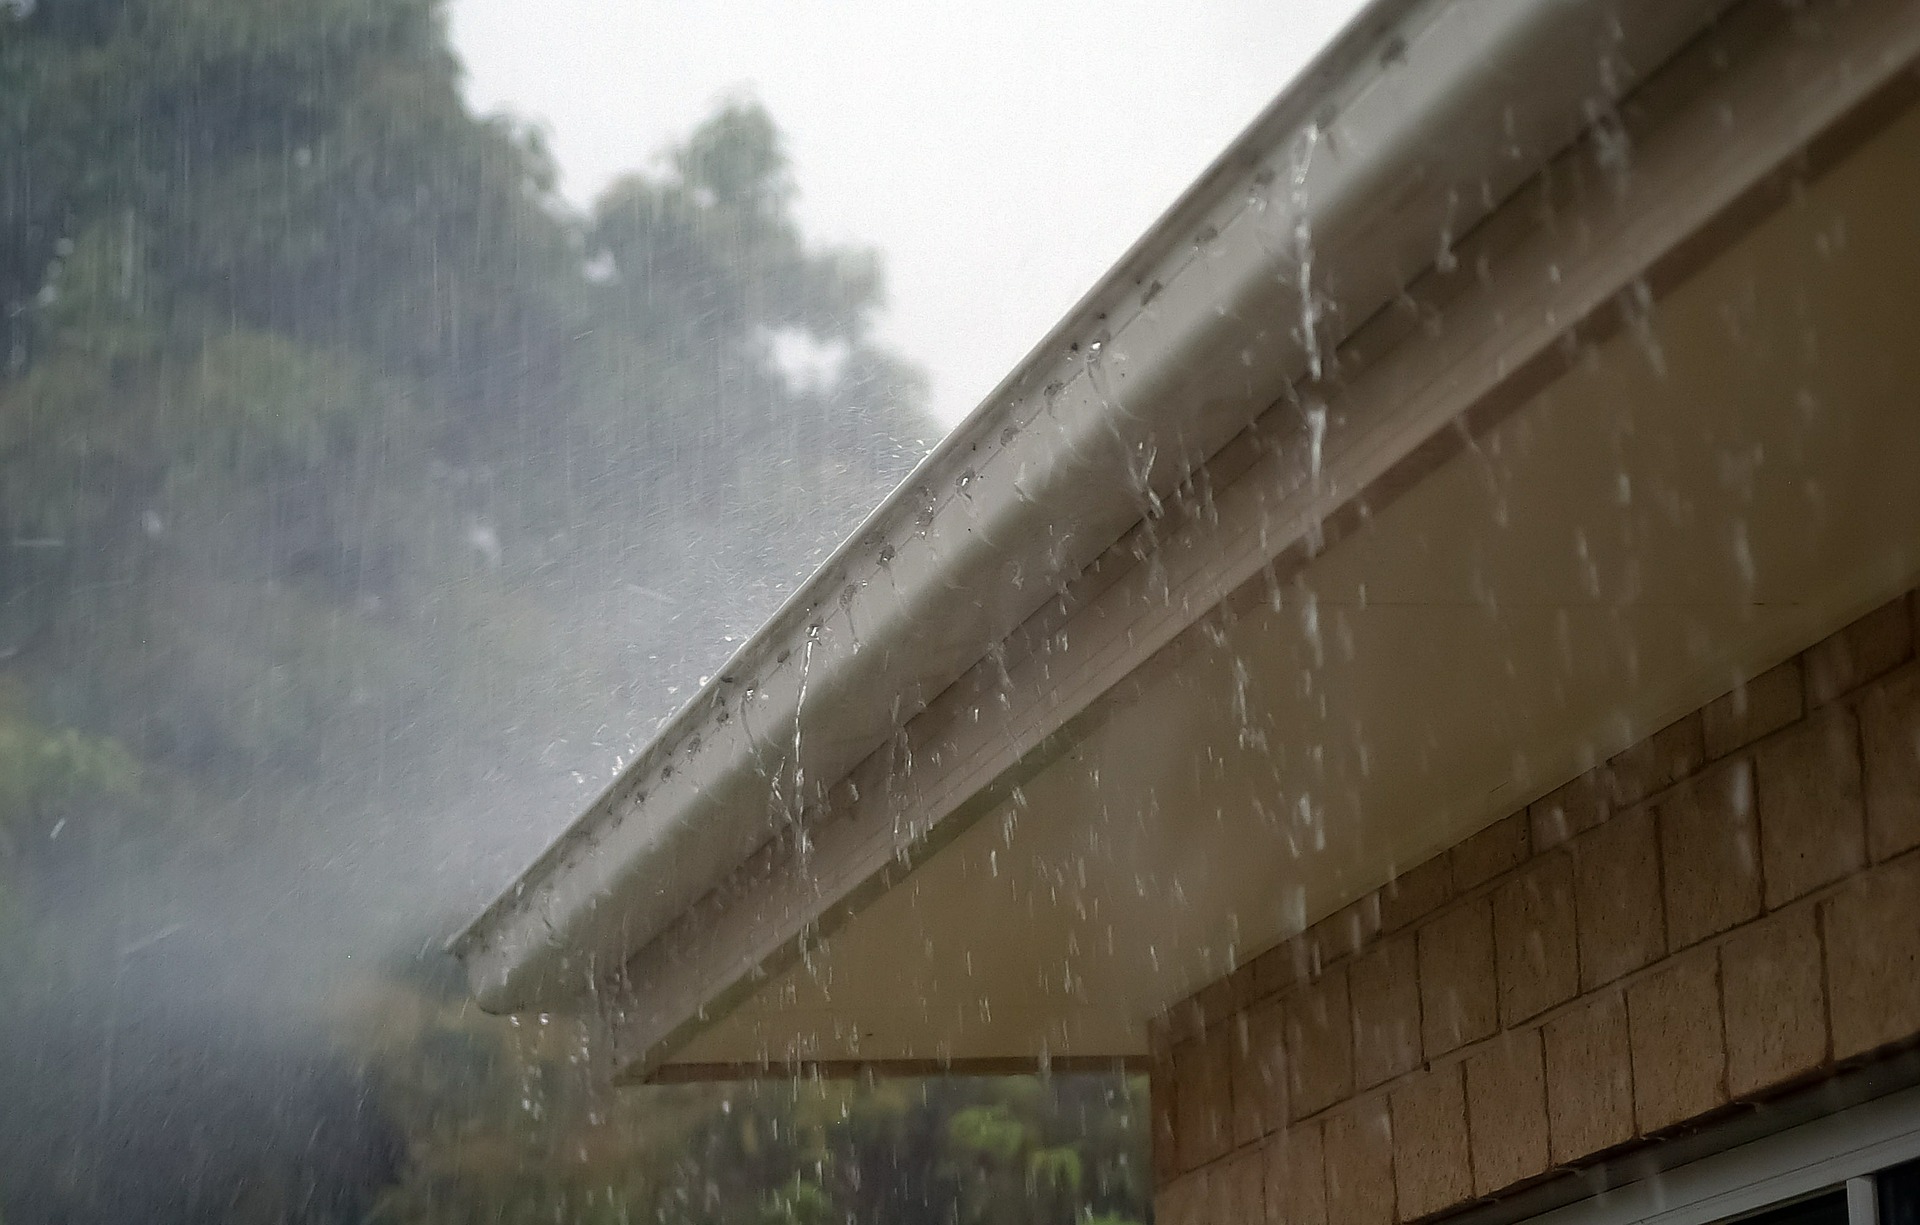 heavy rainfall on a roof